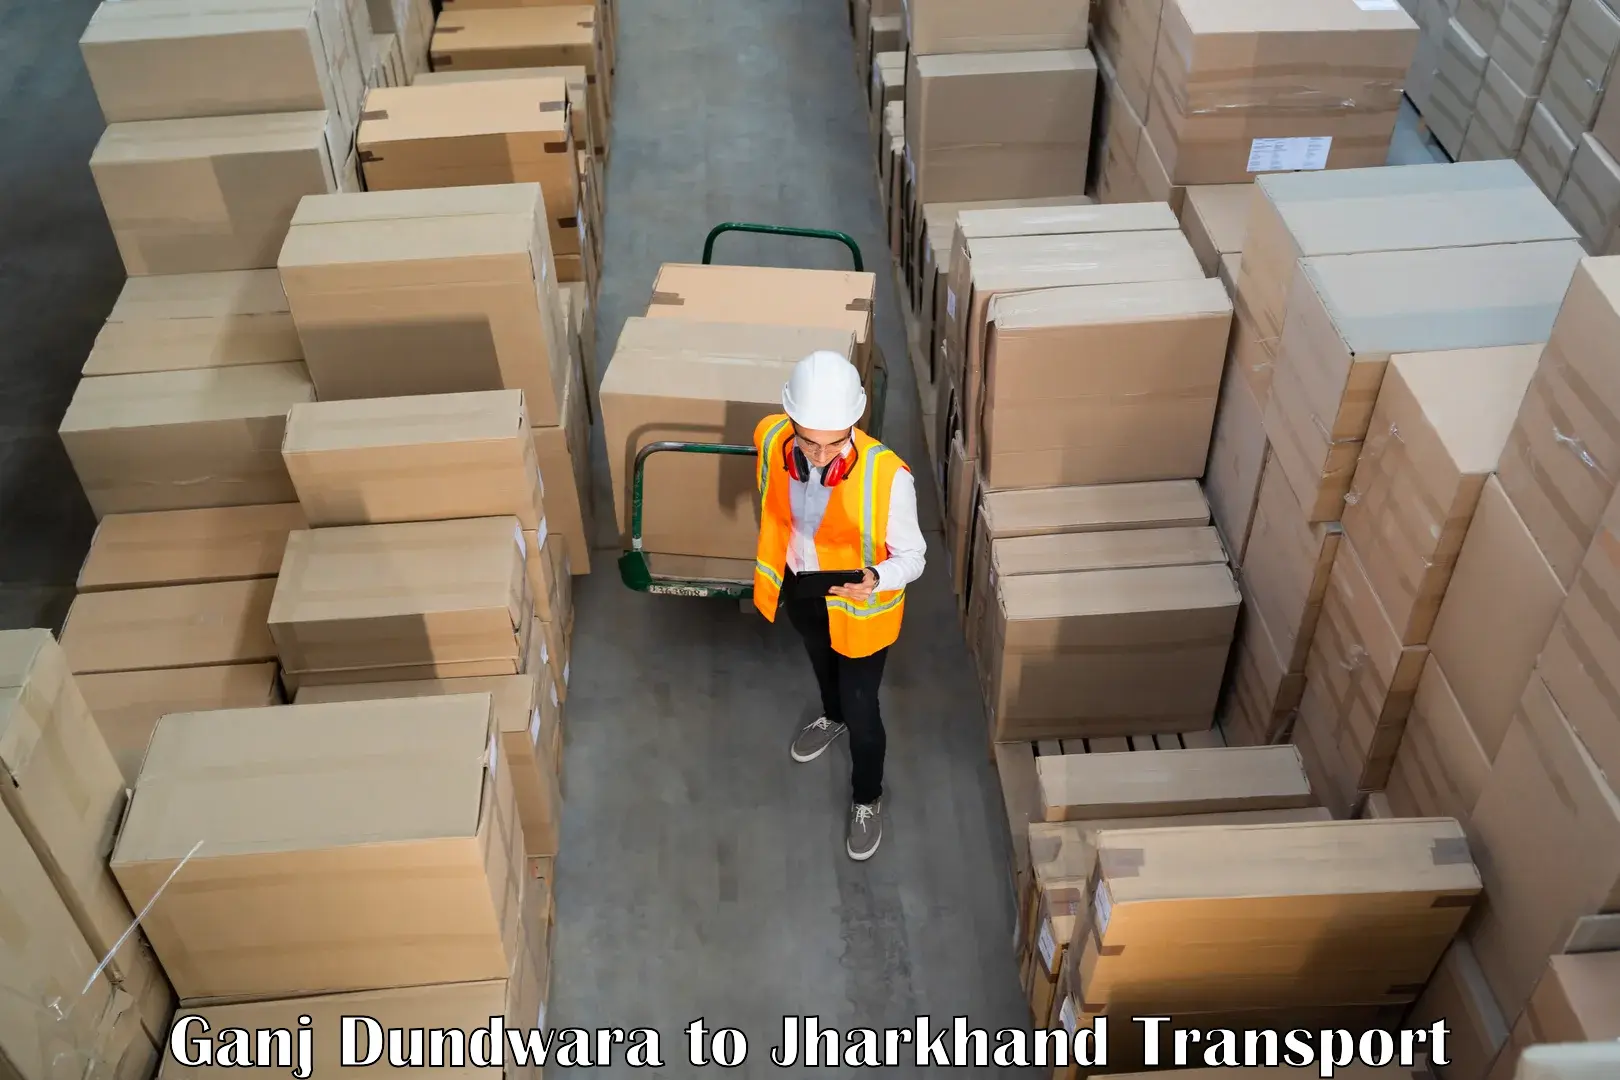 Luggage transport services in Ganj Dundwara to Padma Hazaribagh